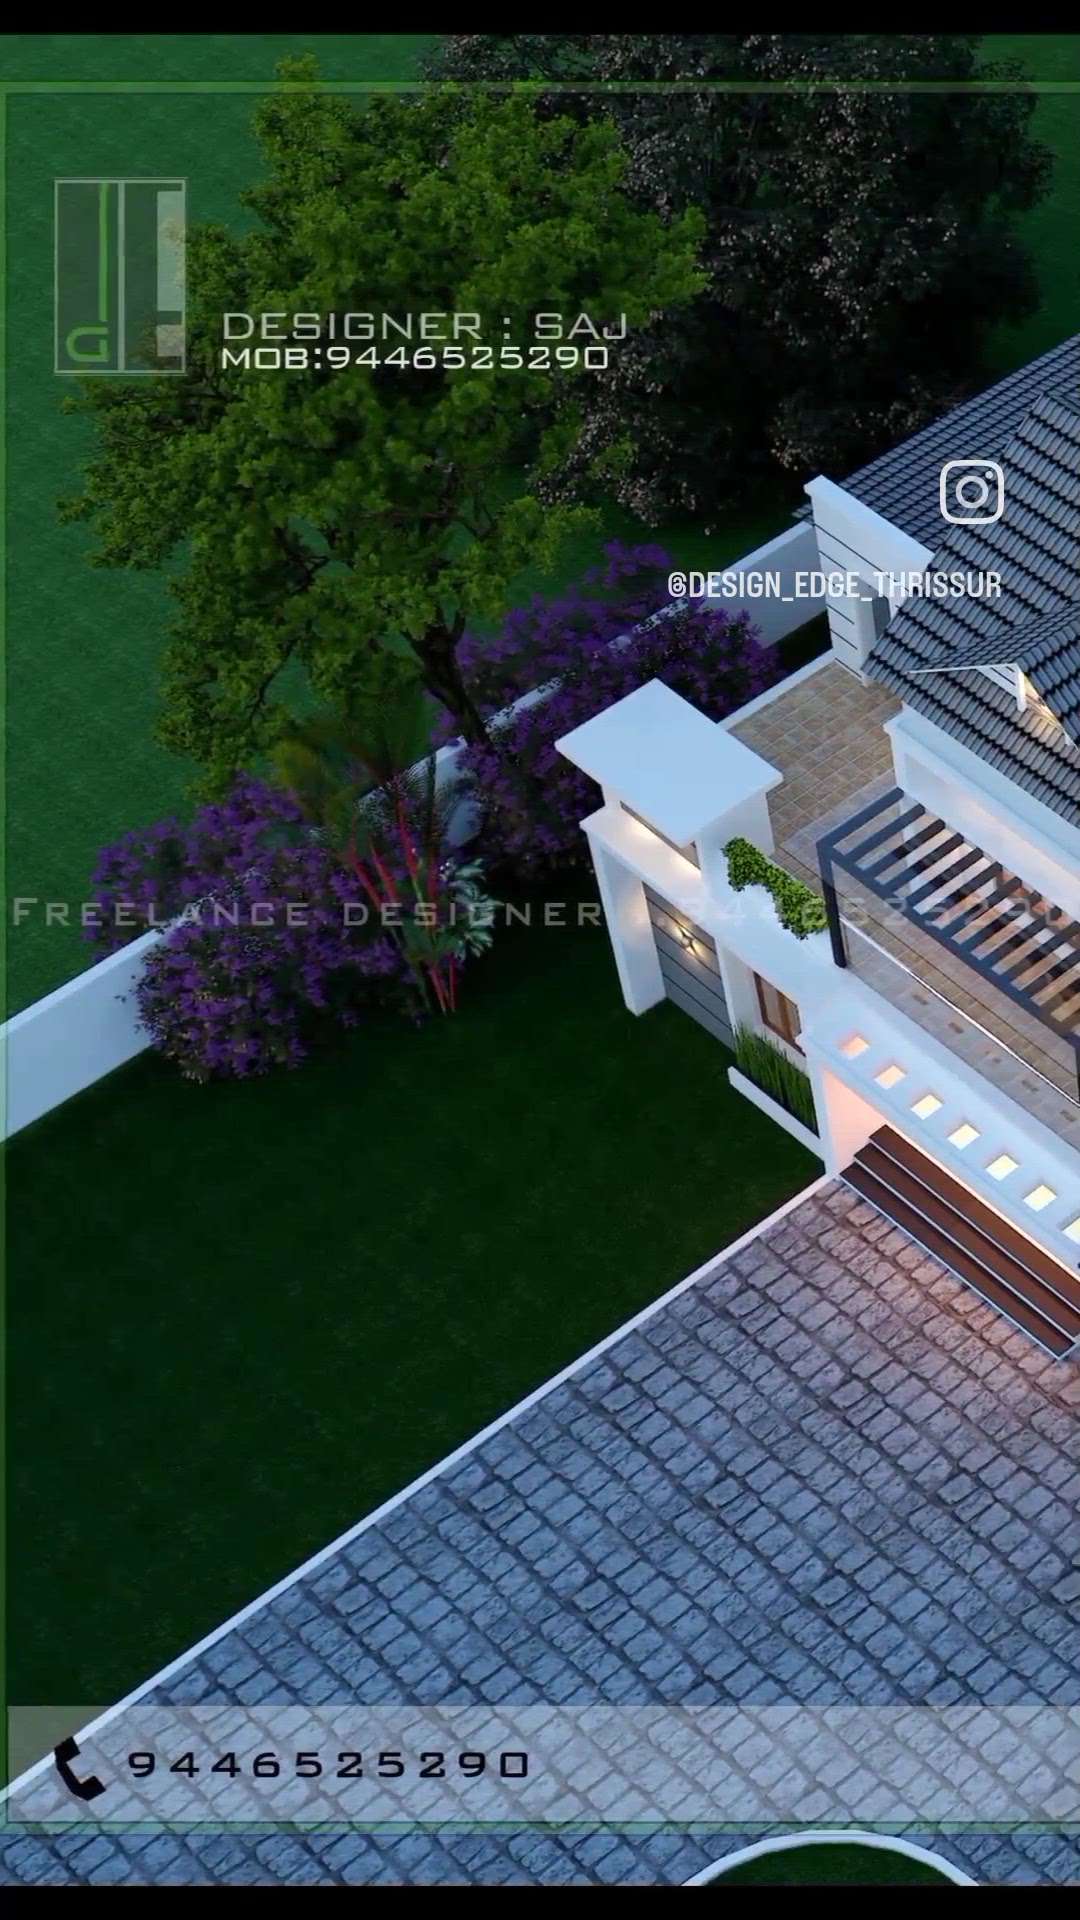 #topview #exteriordesigns #exterior_Work  #exterior3D  #exterior_ #designedgethrissur #everyone